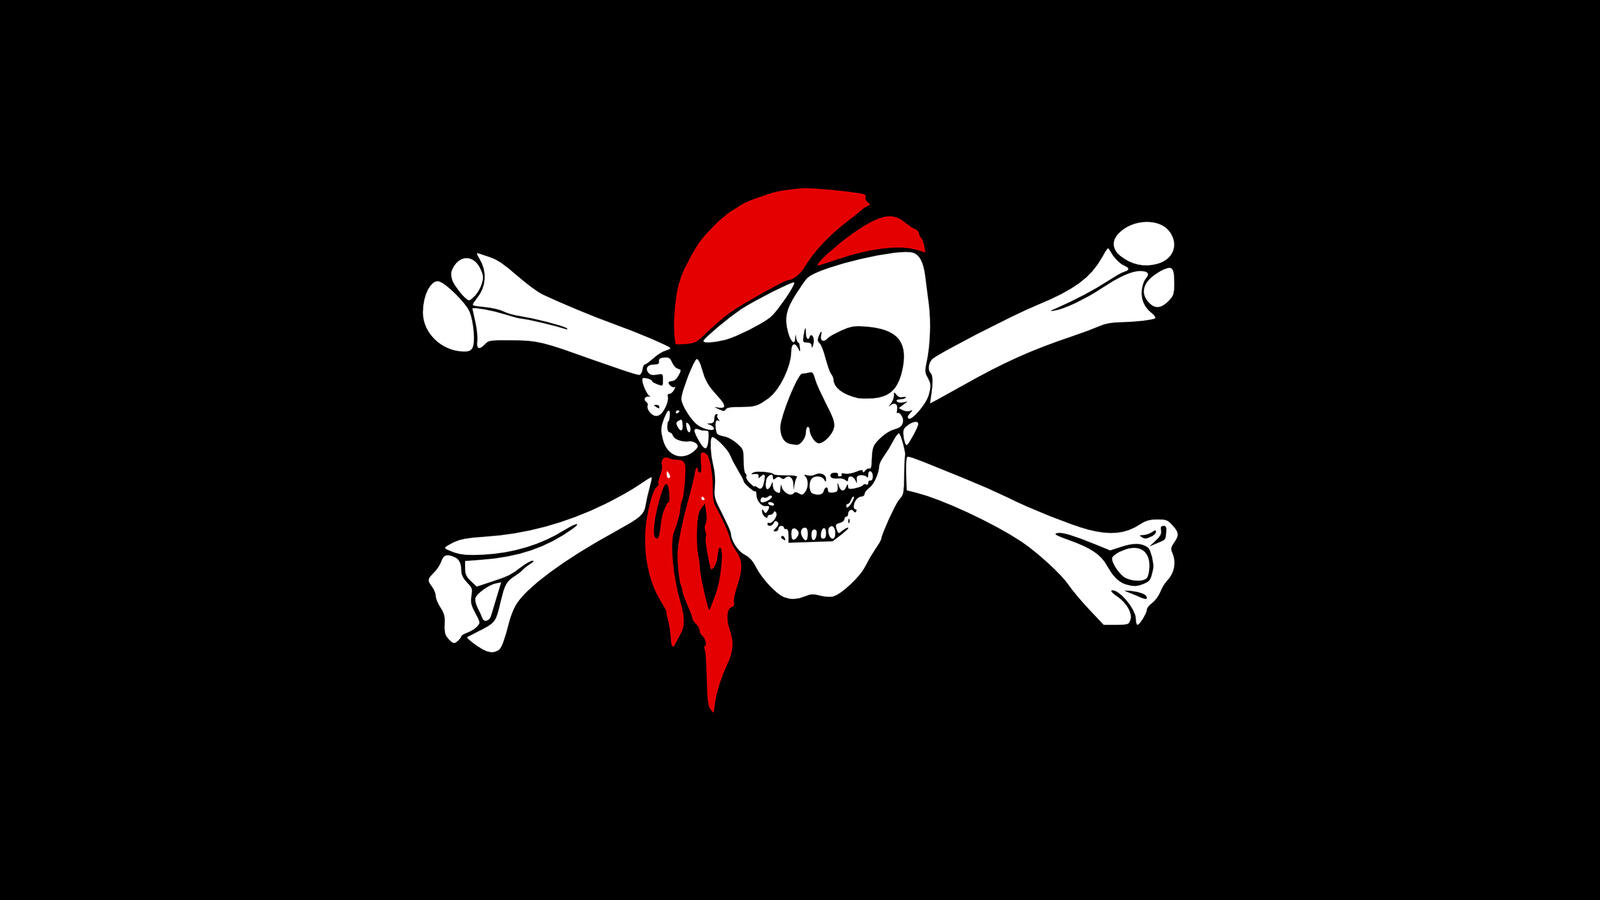 Бесплатное фото Картинка с пиратским символом в красной бандане на черном фоне